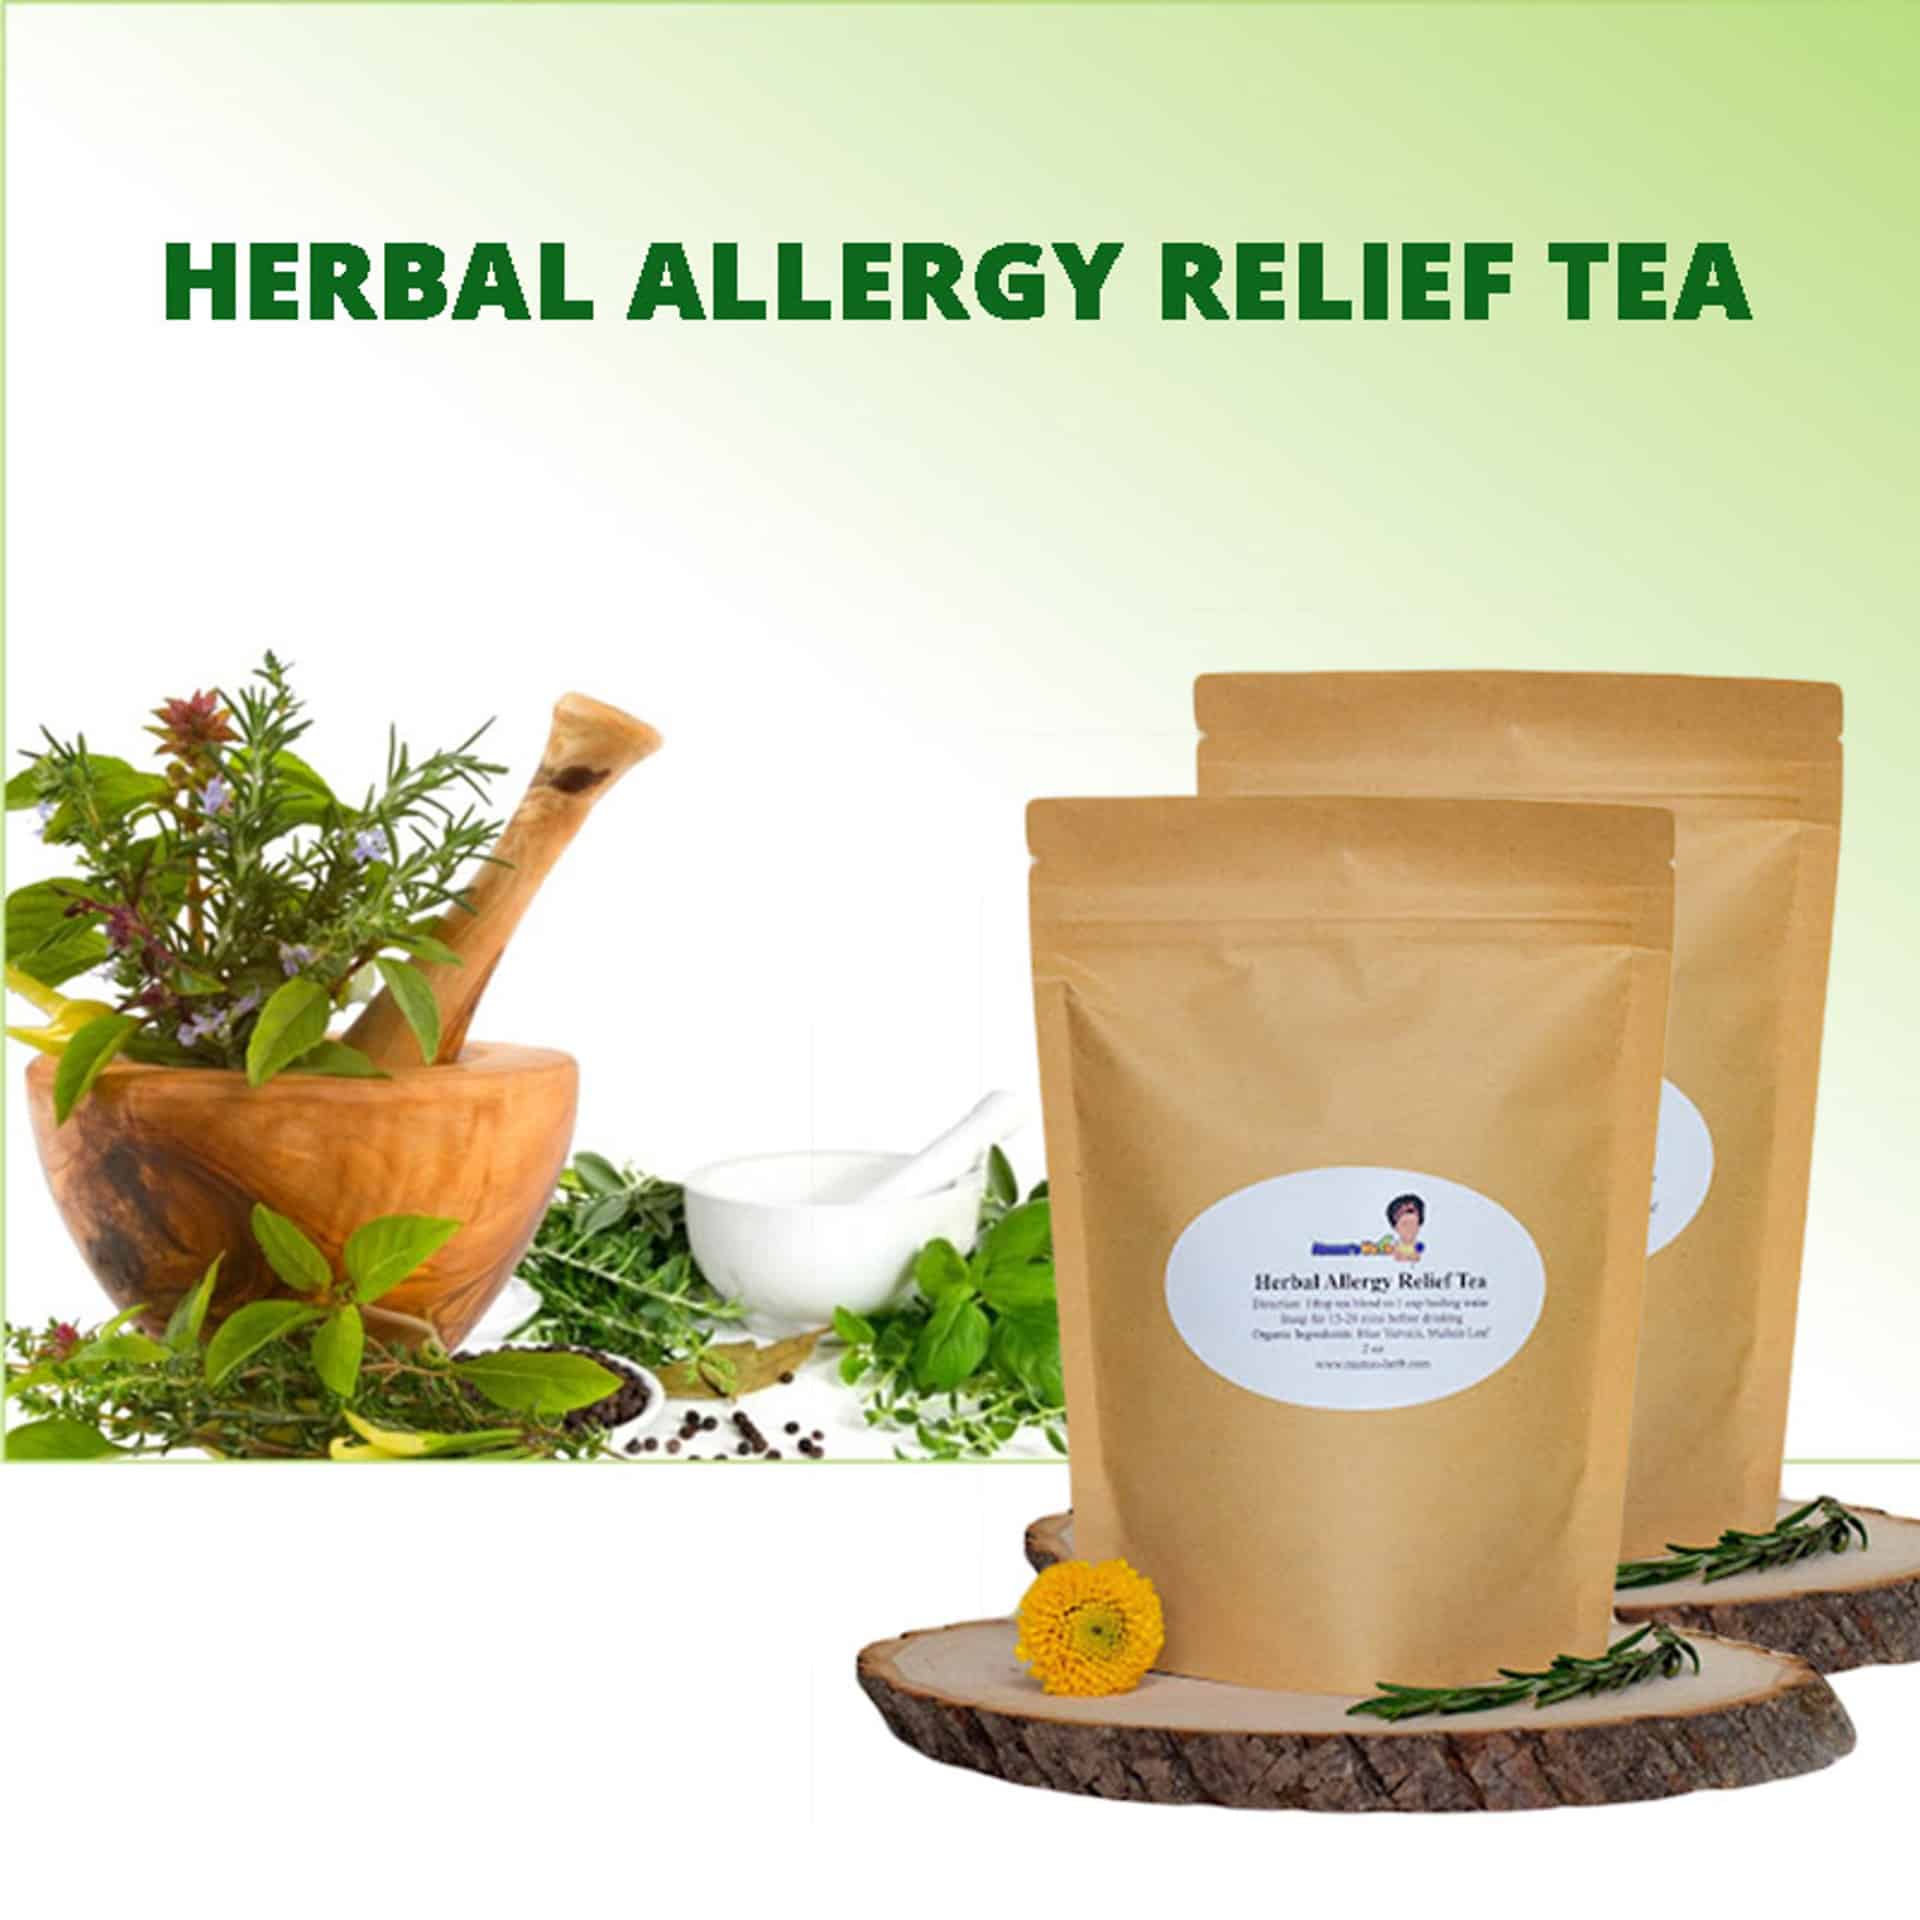 Herbal Allergy Relief Tea